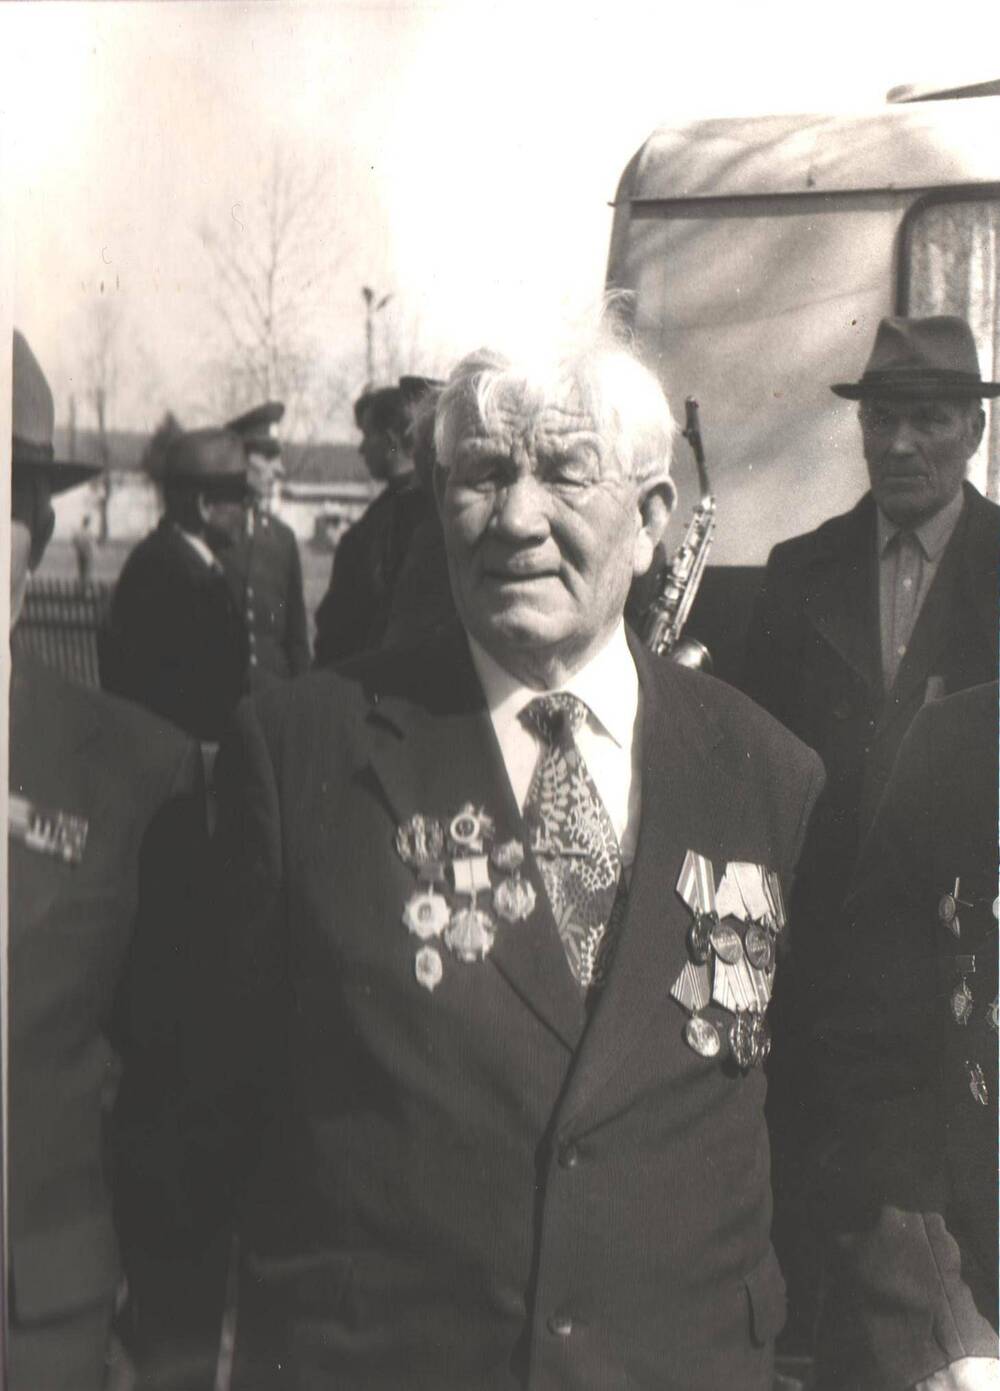 Пожилой мужчина ветеран Великой Отечественной войны 1941-1945 гг., у памятника Никто не забыт, ничто не забыто, село Айкино.